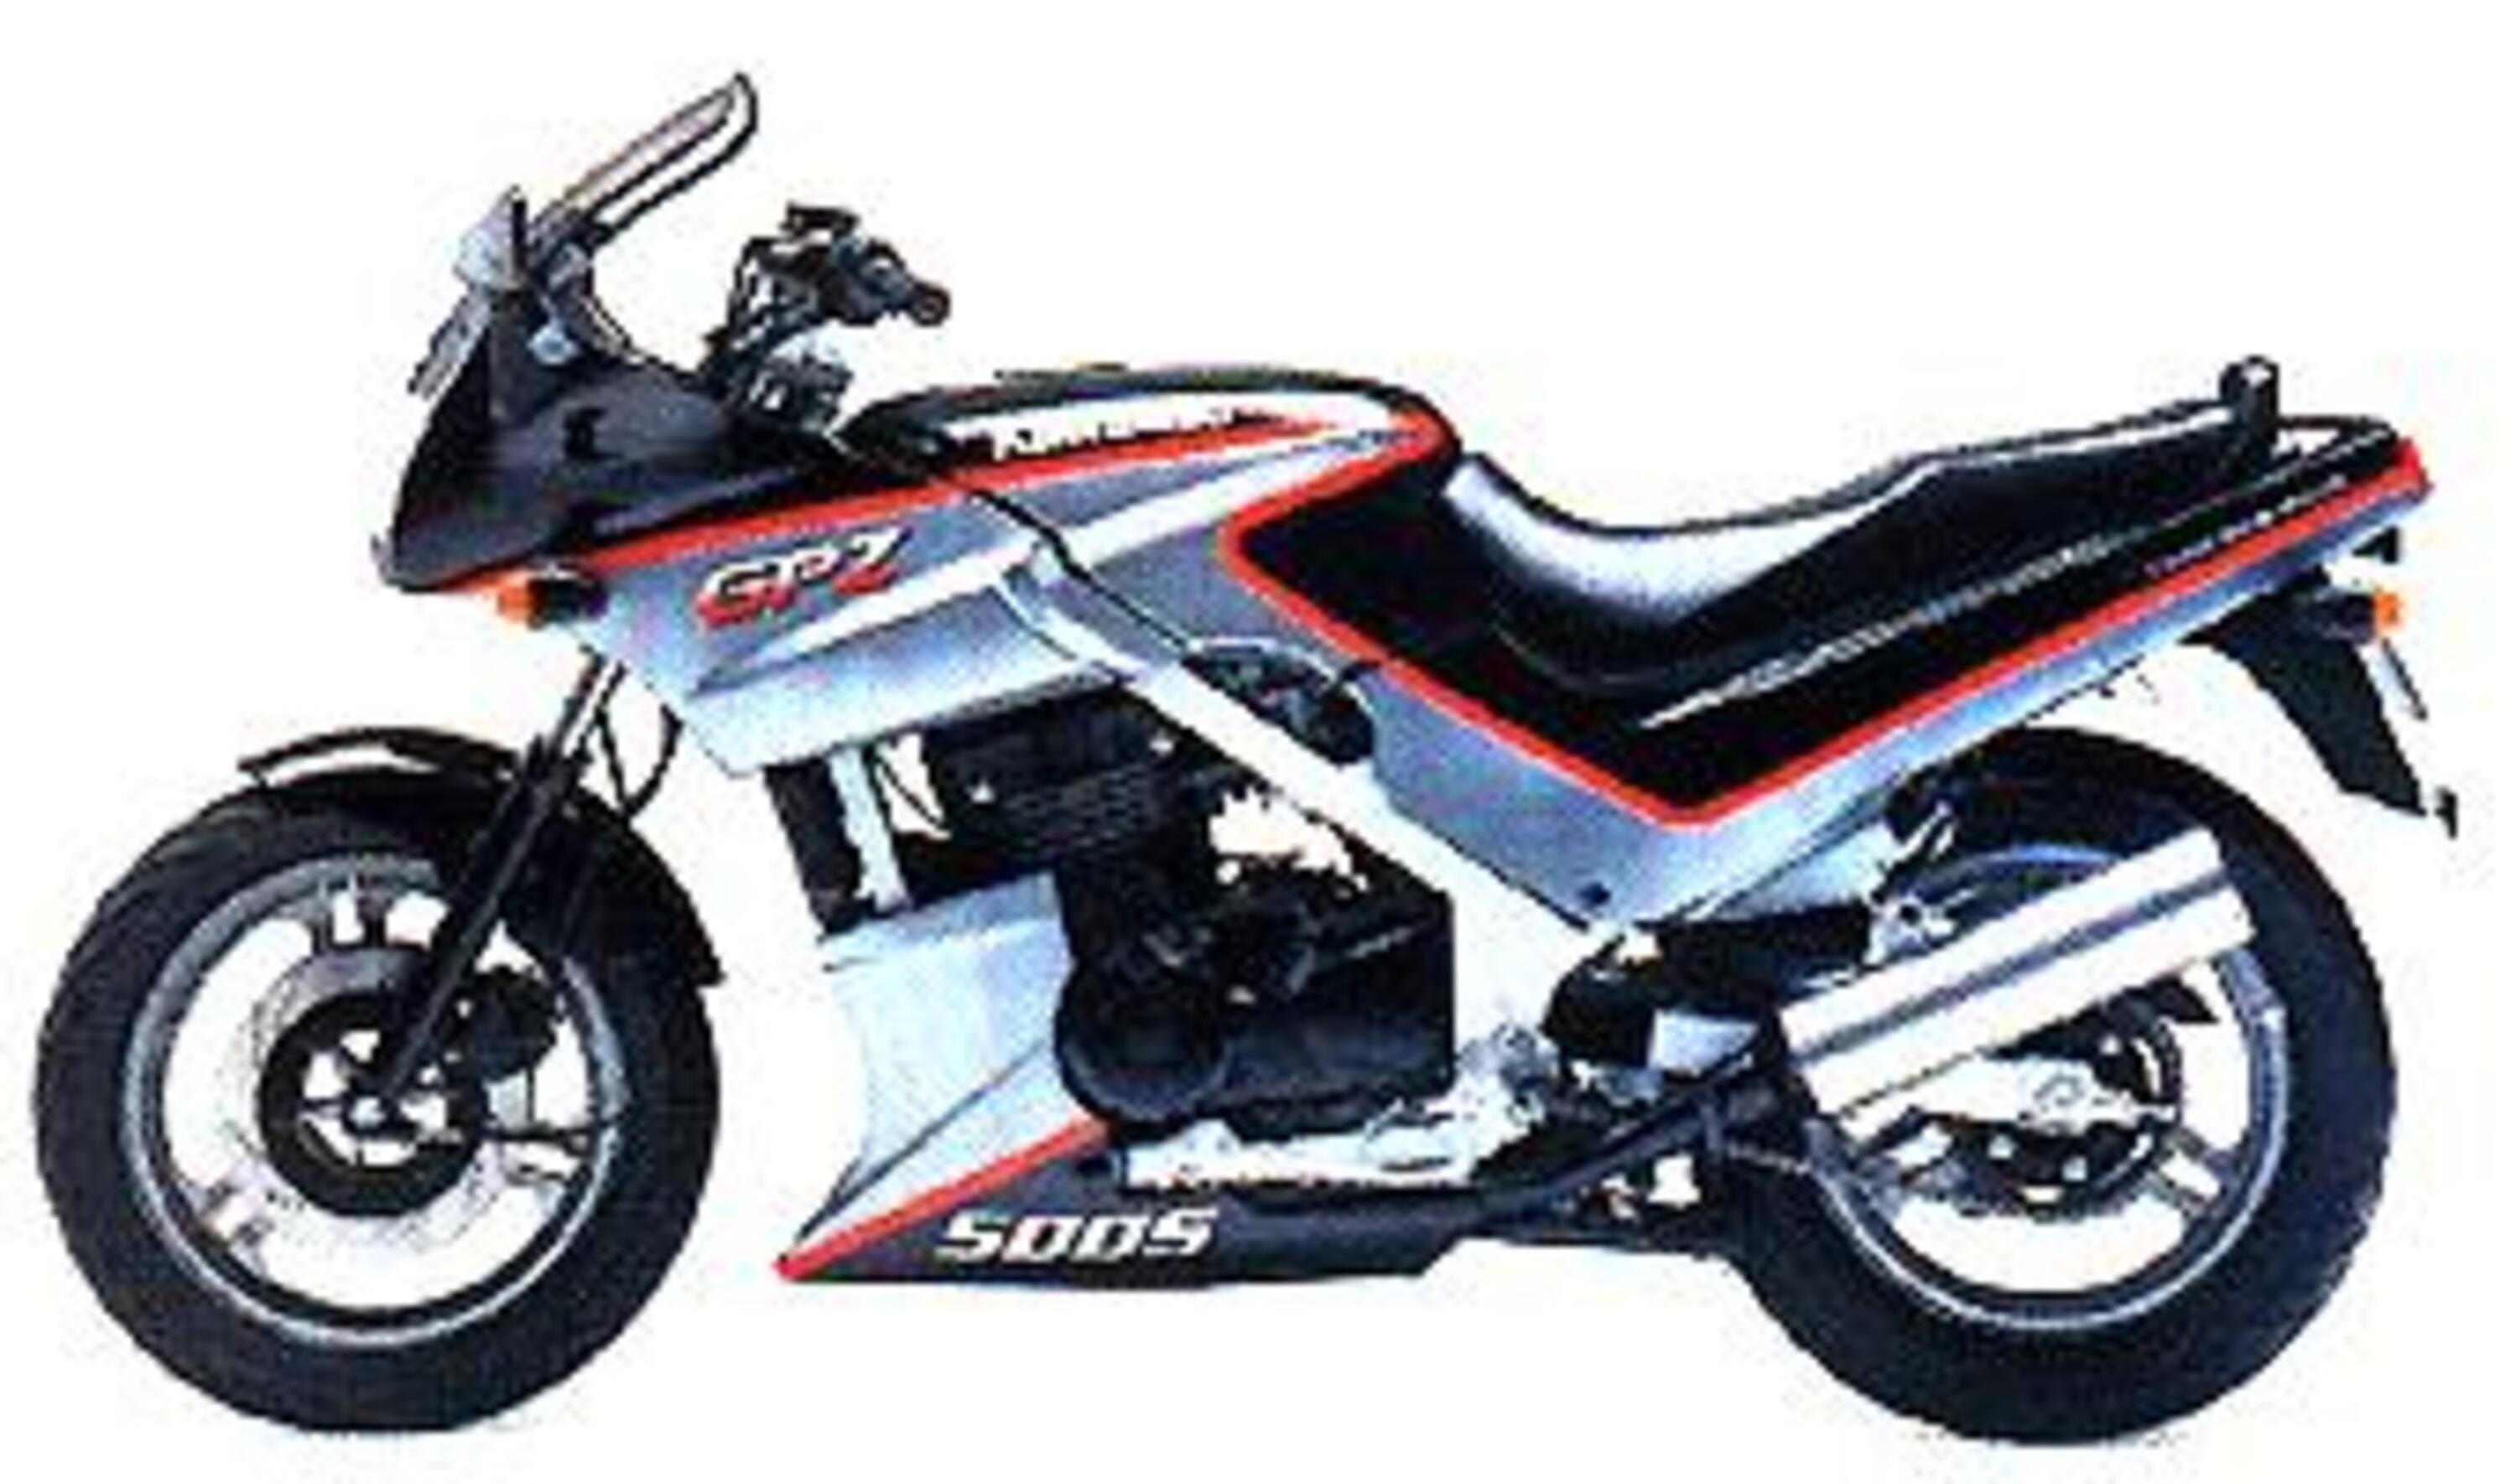 Kawasaki GPz 500 S GPz 500 S (1988 - 93) B